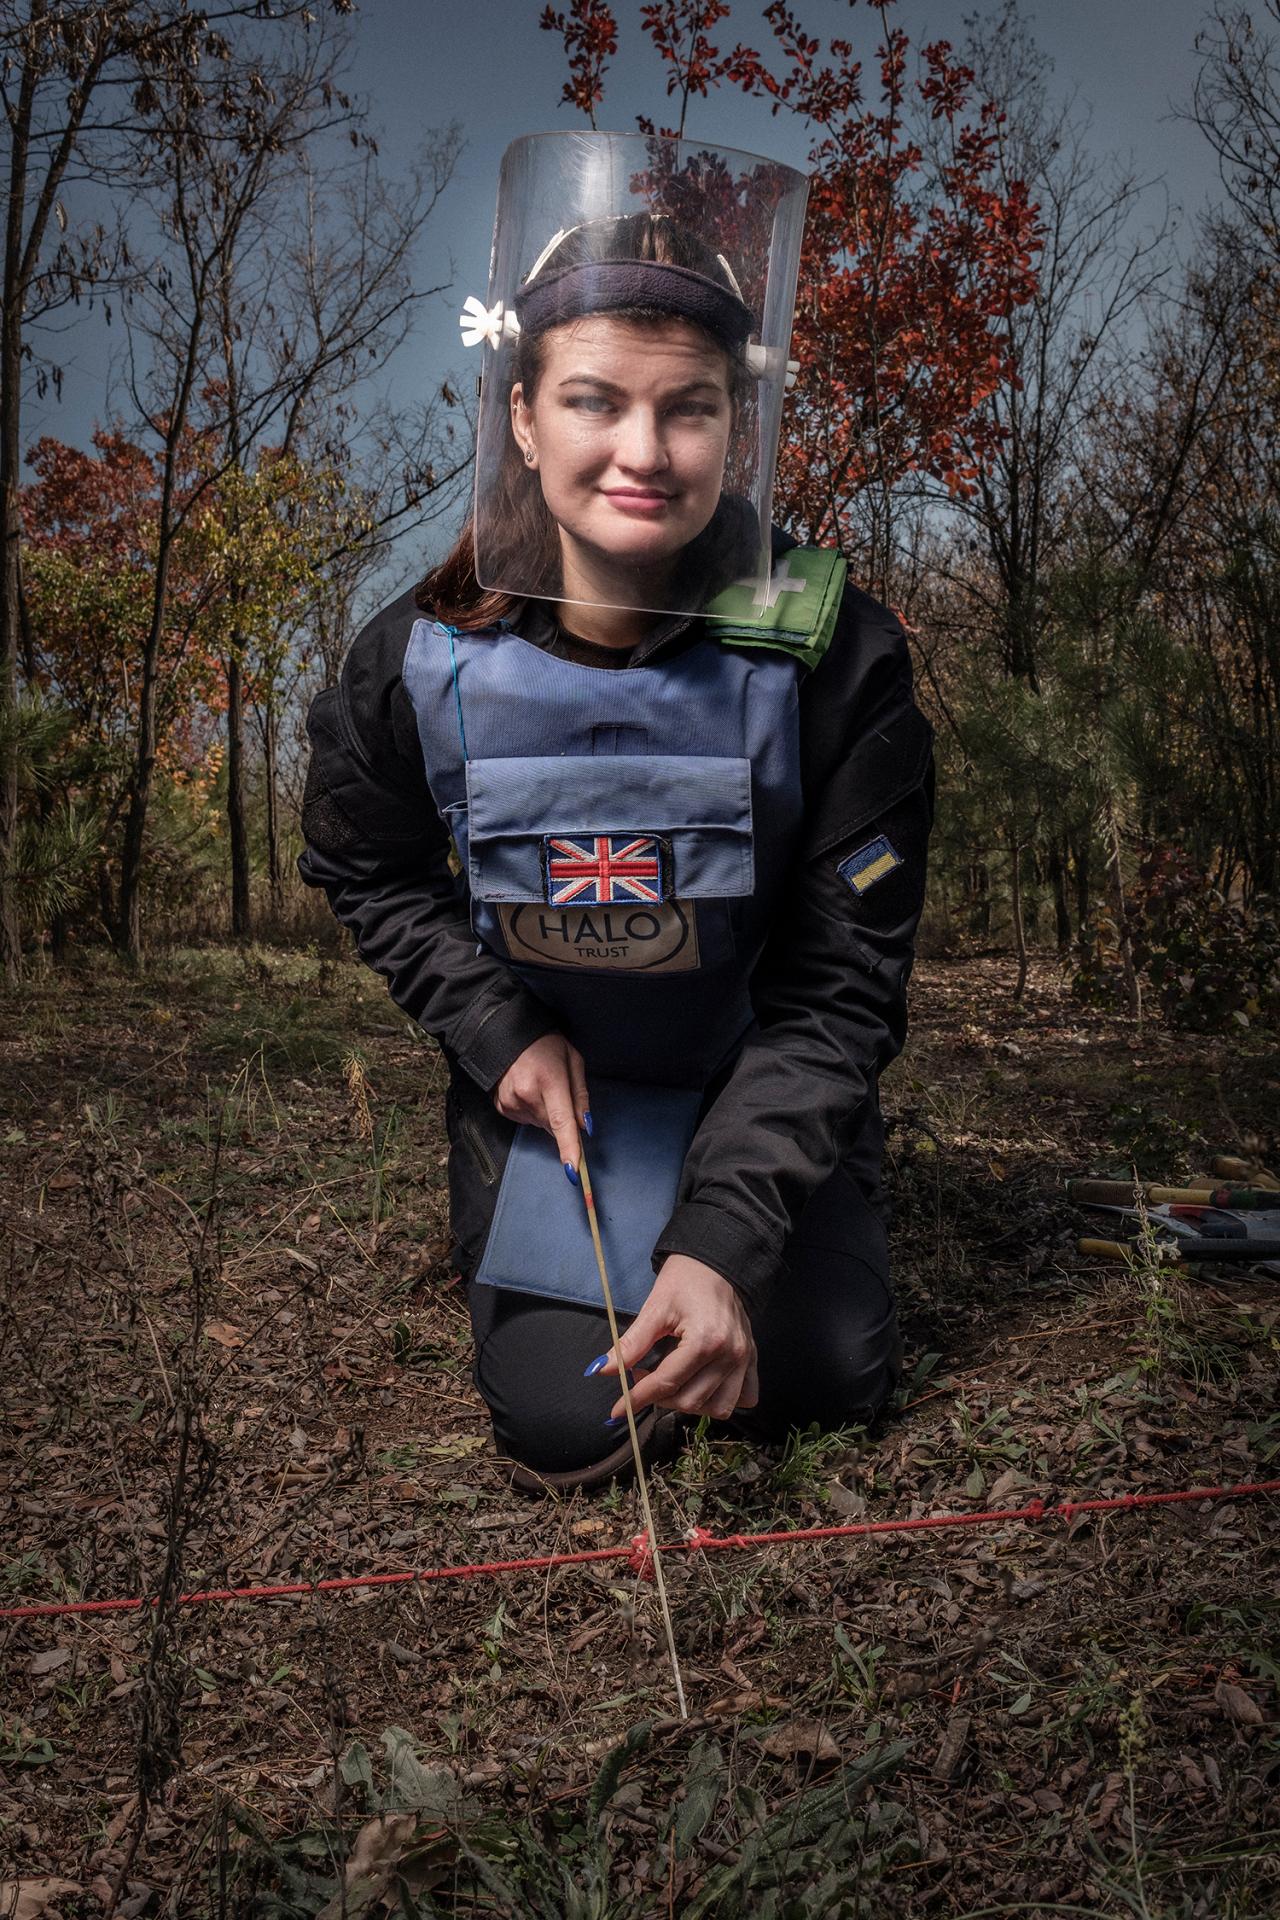 nataša pracuje pre medzinárodnú orrganizáciu na odmínovaní polí v okolí mesta Kramatorsk. Túto nebezpečnú prácu prijala, lebo chce pomôcť svojej krajine.